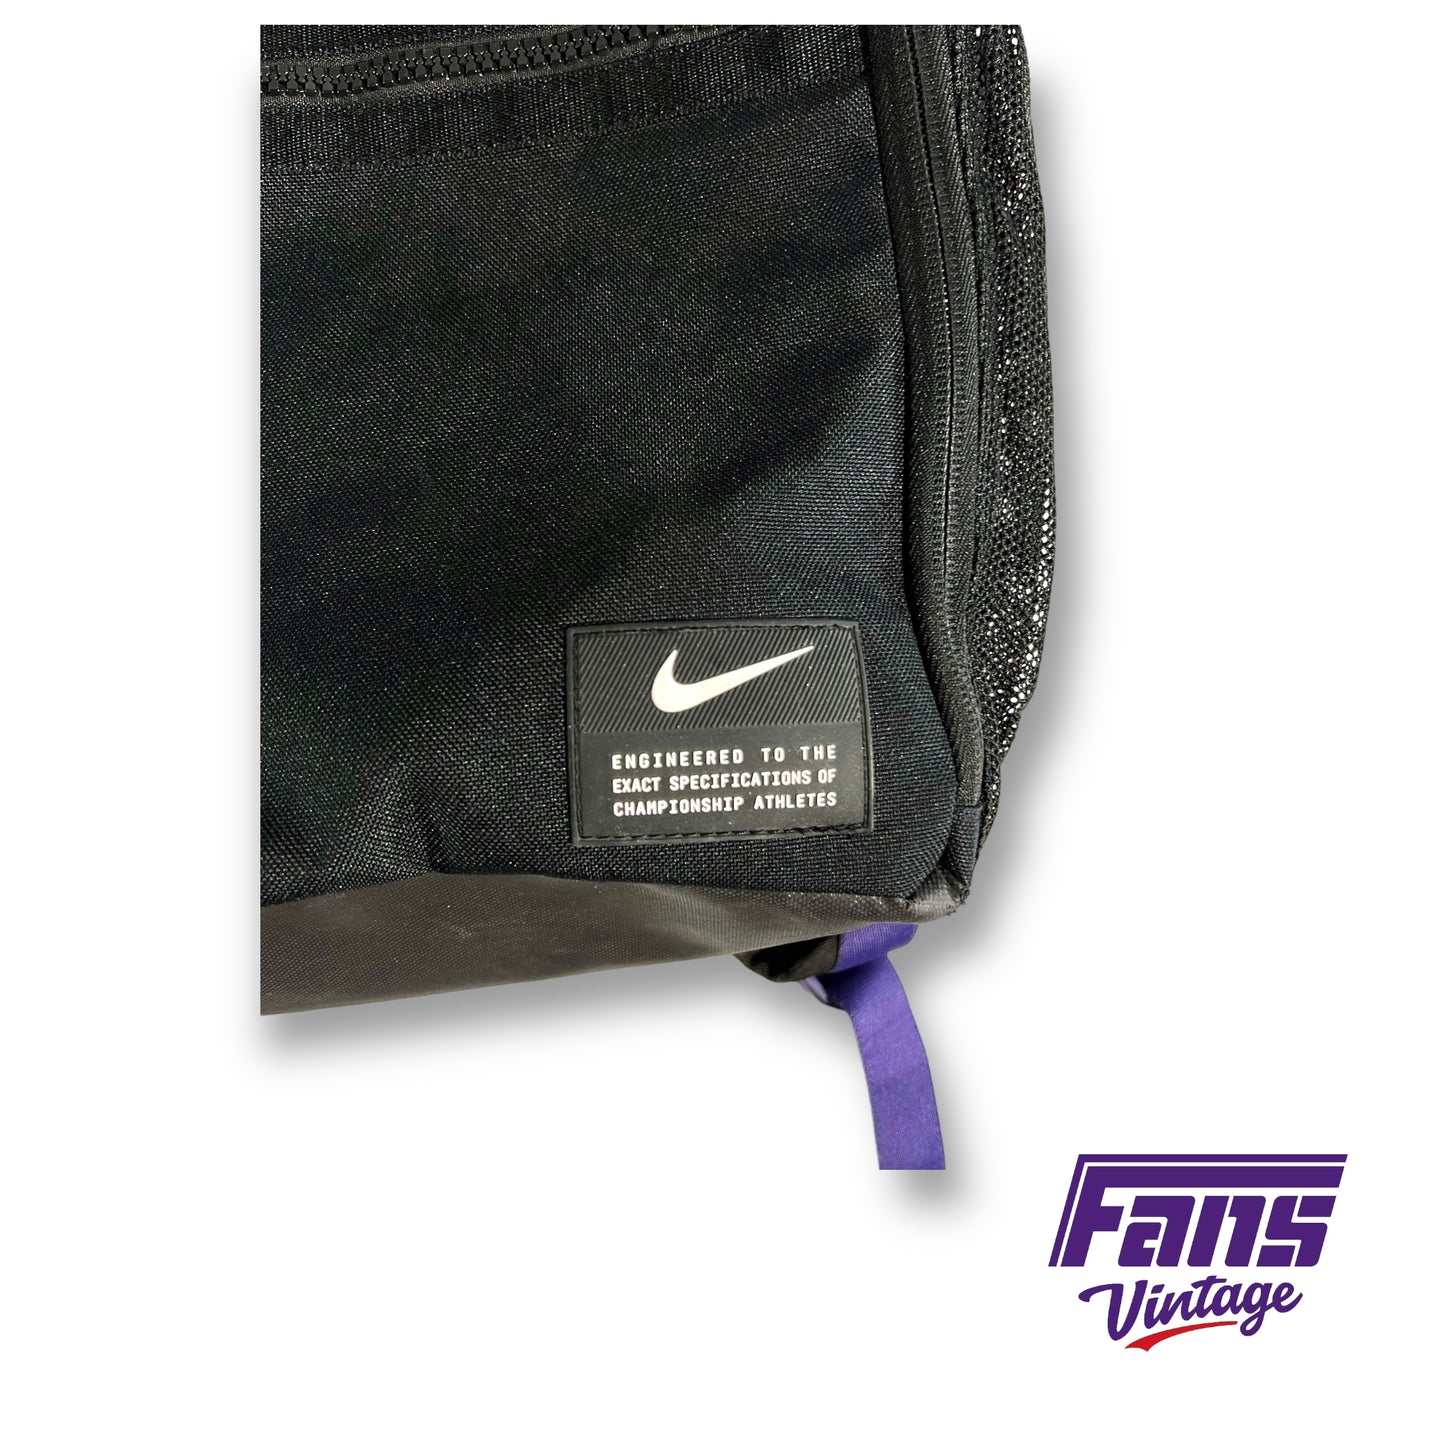 Nike TCU Football team issued backpack